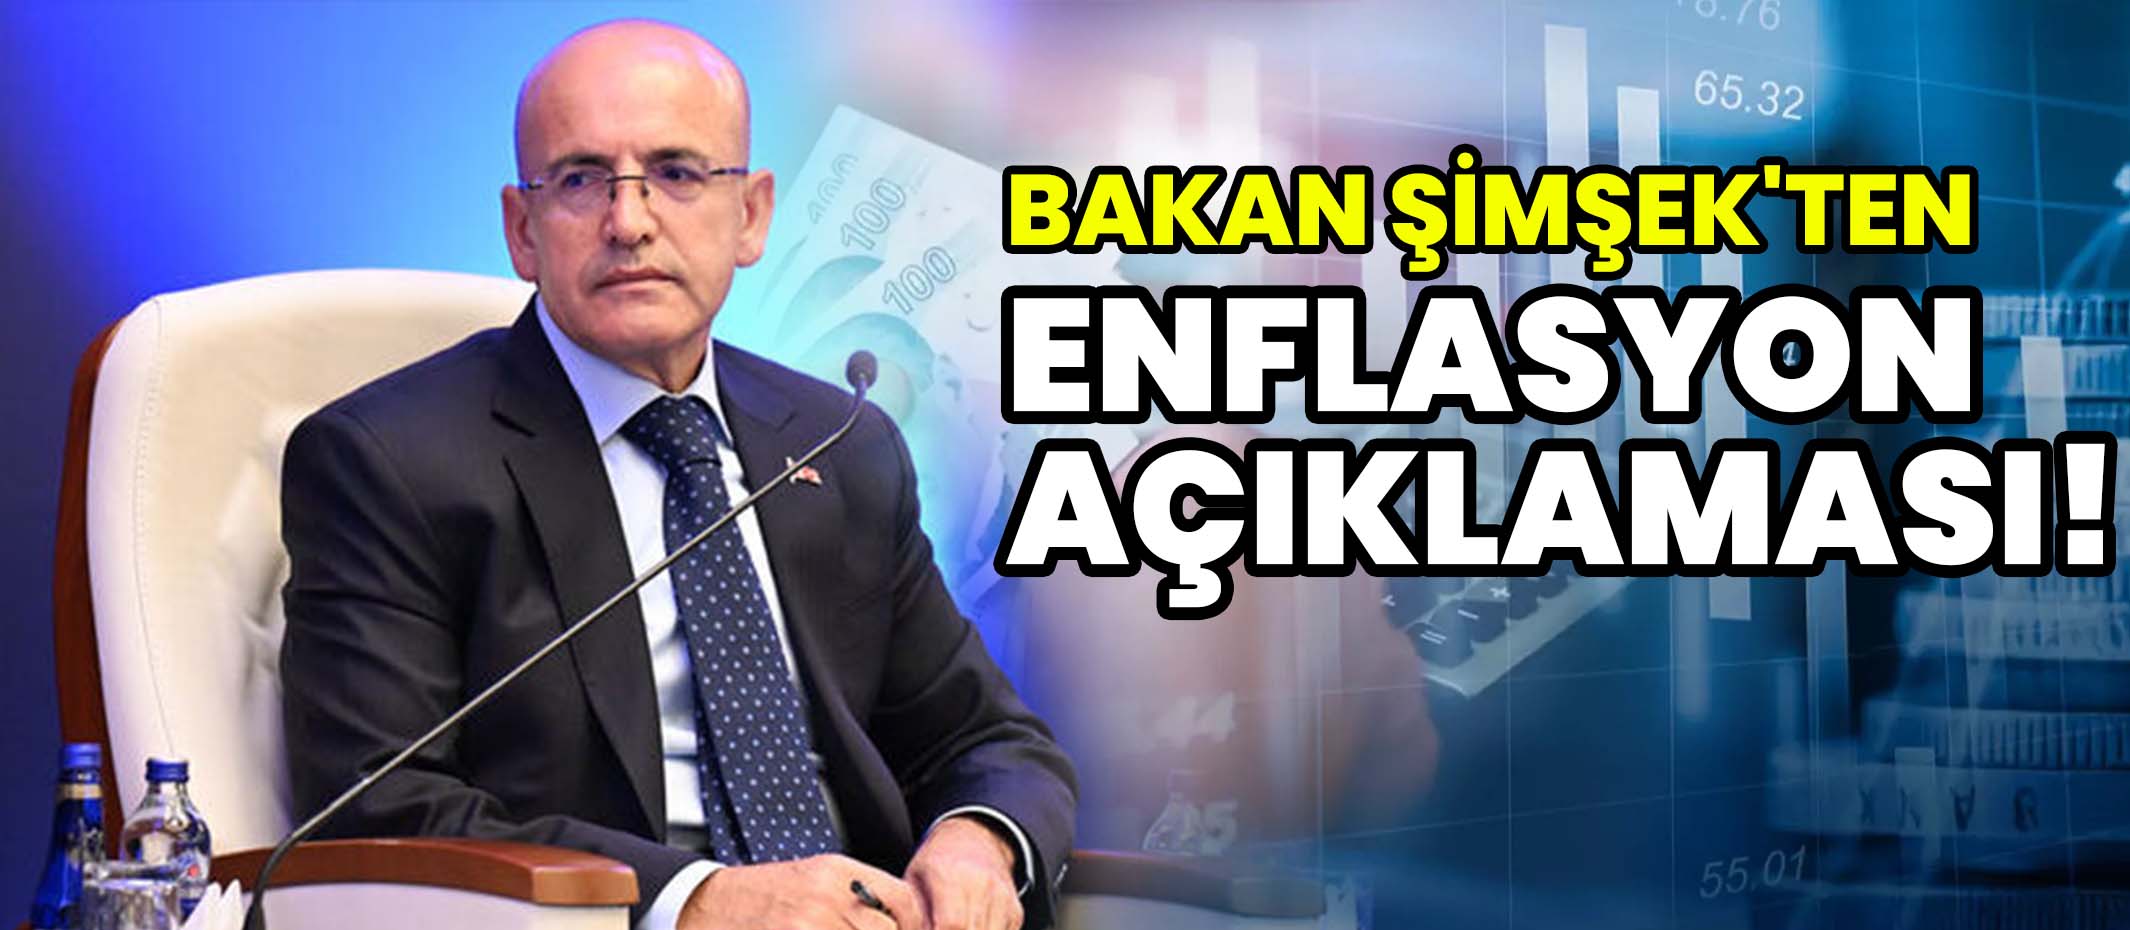 Bakan Şimşek'ten enflasyon açıklaması!